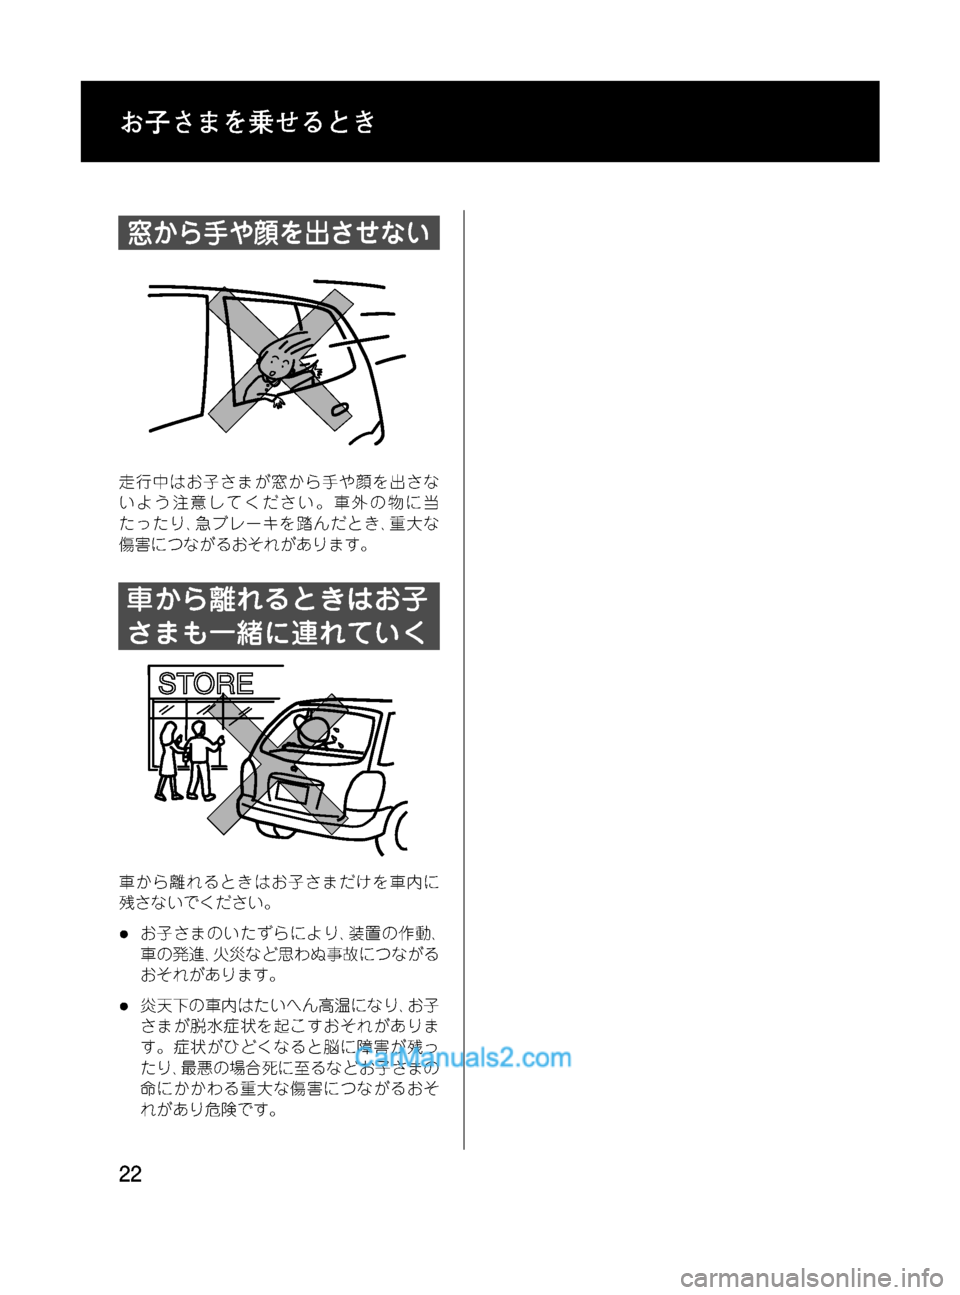 MAZDA MODEL VERISA 2007  ベリーサ｜取扱説明書 (in Japanese) Black plate (22,1)
窓から手や顔を出させない
走行中はお子さまが窓から手や顔を出さな
いよう注意してください。車外の物に当
たったり､急ブレーキ�